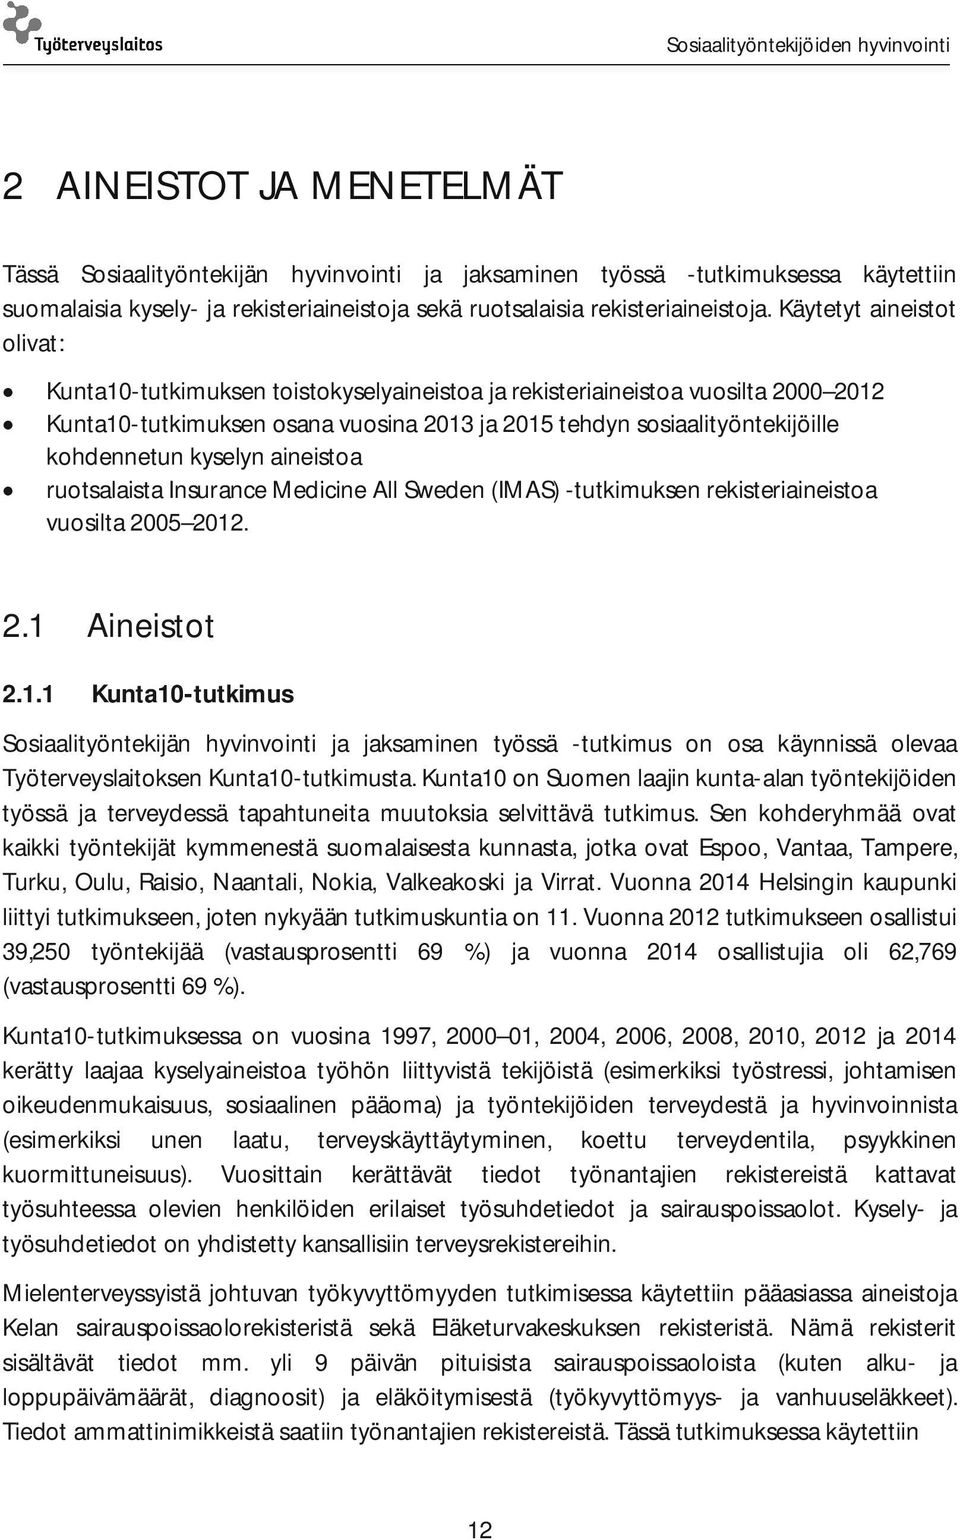 kyselyn aineistoa ruotsalaista Insurance Medicine All Sweden (IMAS) -tutkimuksen rekisteriaineistoa vuosilta 2005 2012